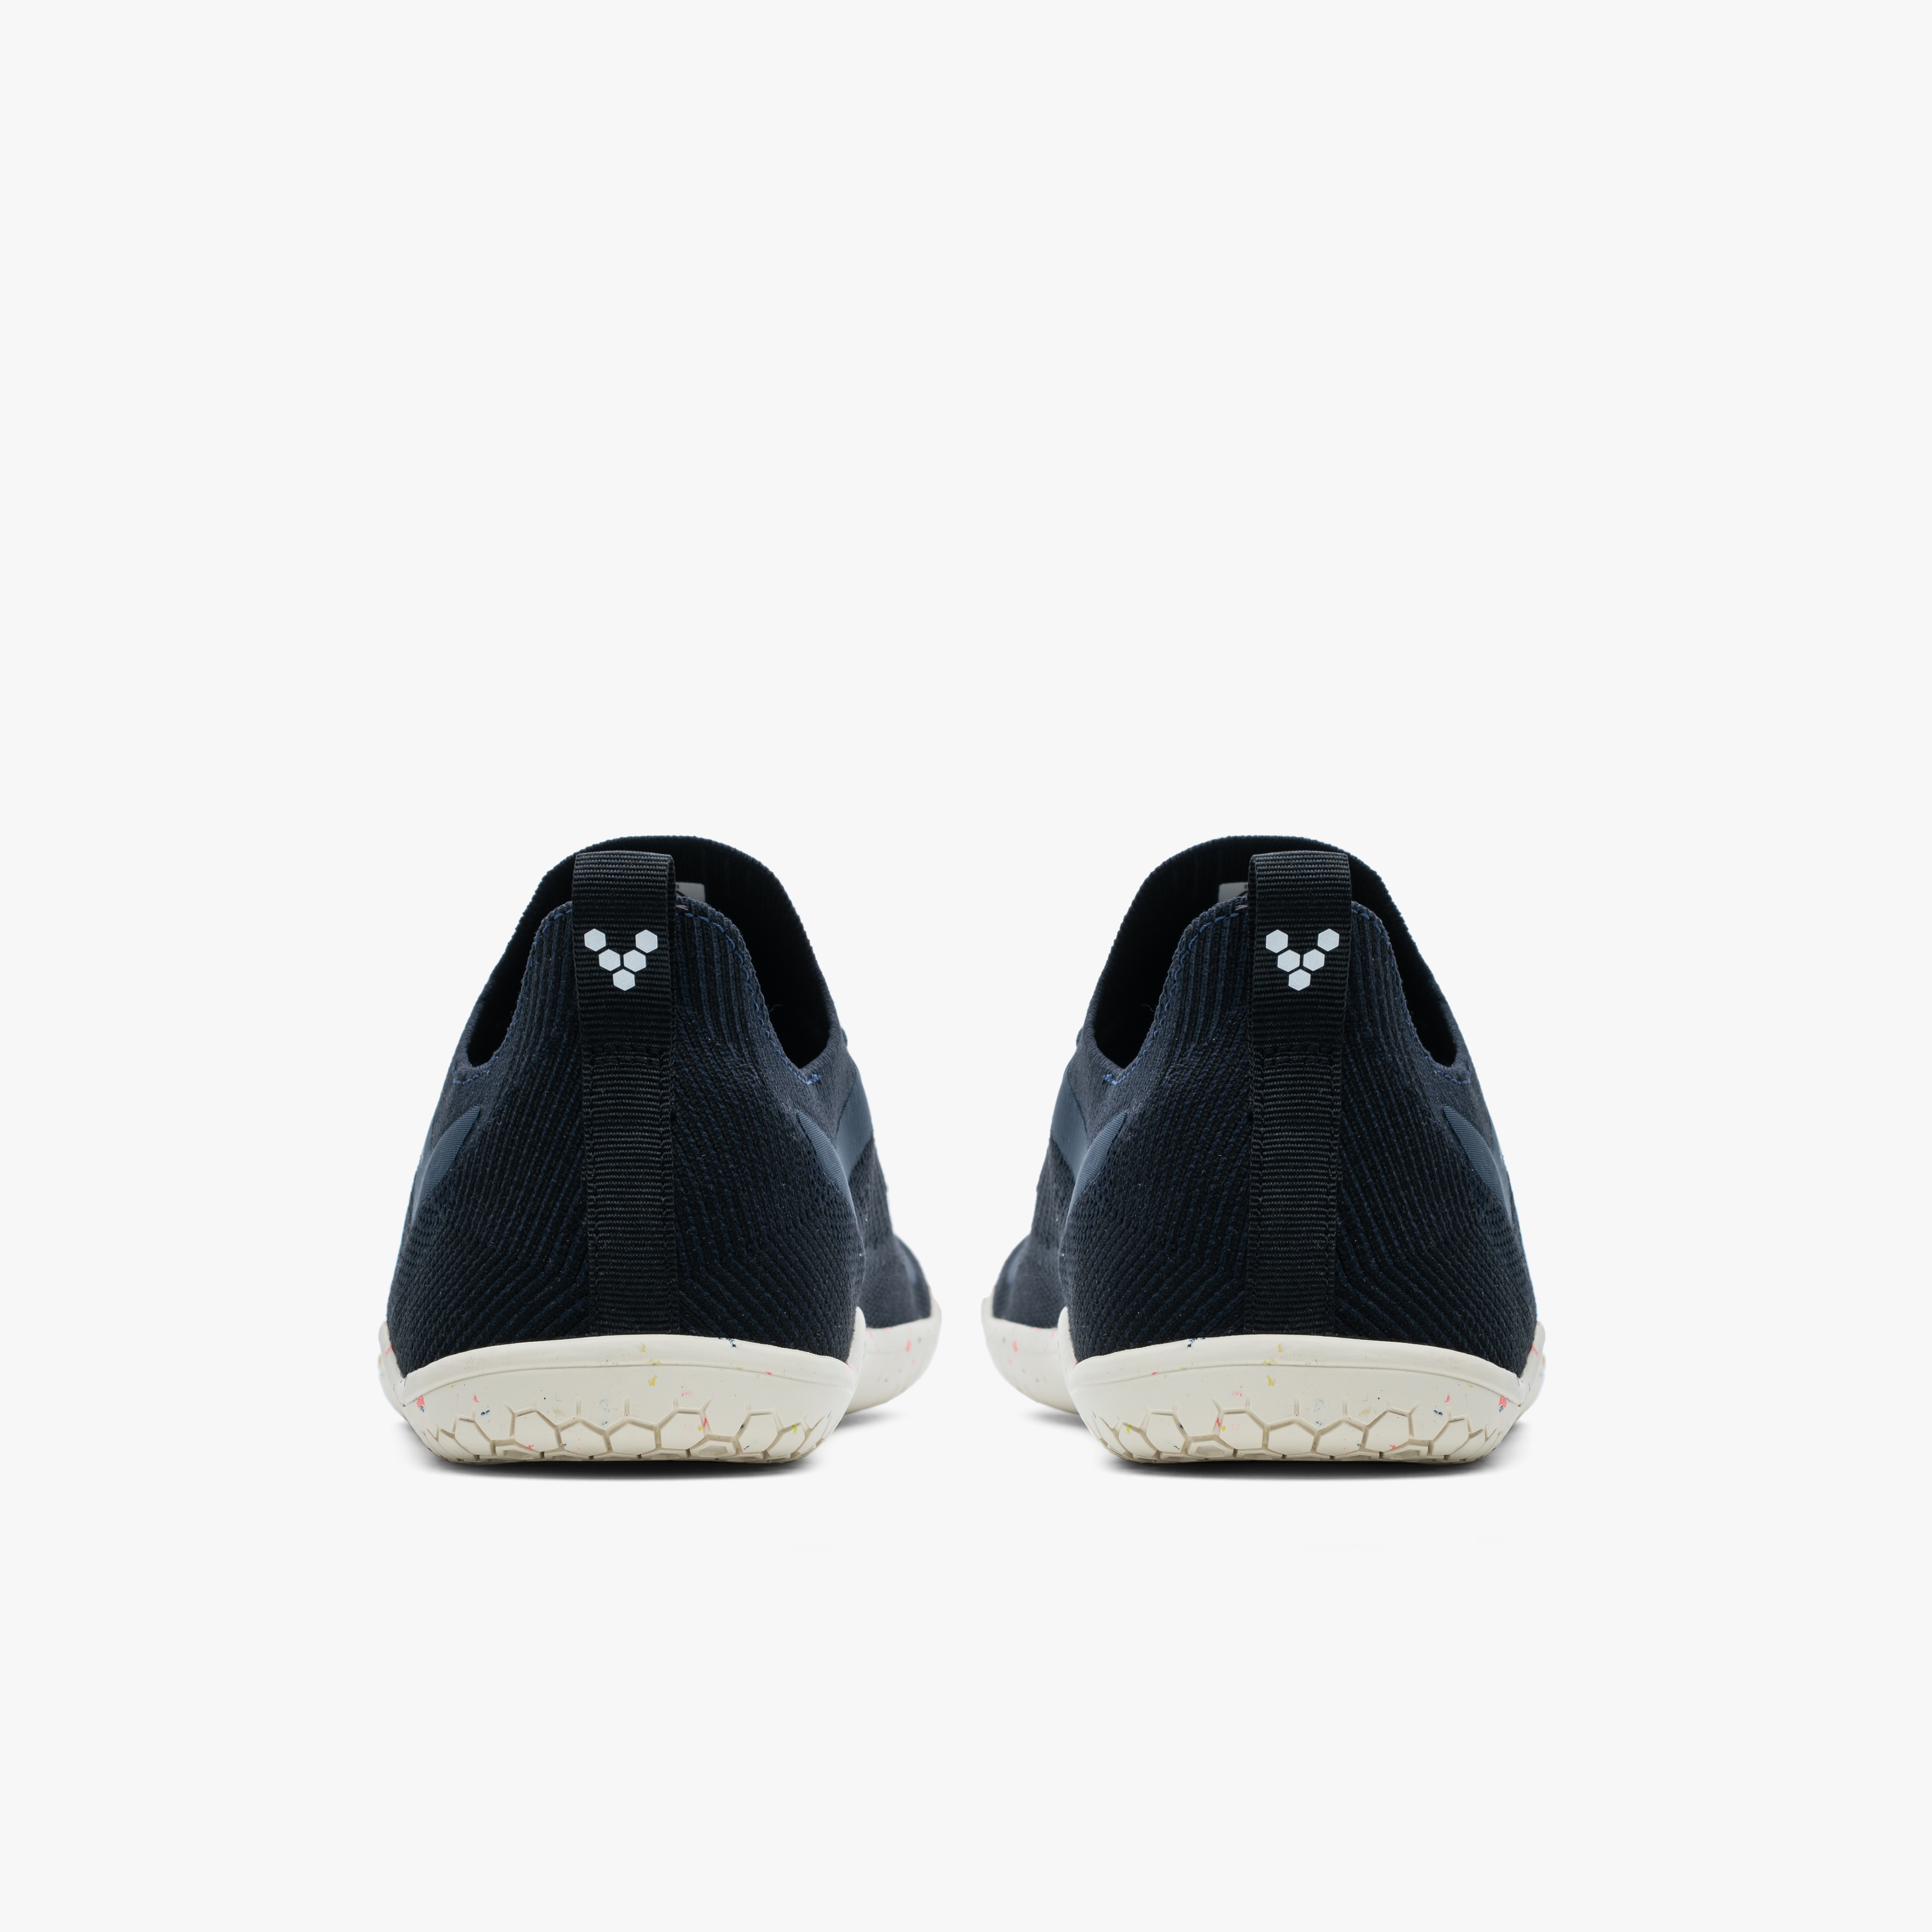 Bagfra visning af Vivobarefoot Primus Lite Knit Womens sko i mørkeblå, fremstillet af genanvendte materialer, med tynde, fleksible såler for en naturlig fodfornemmelse